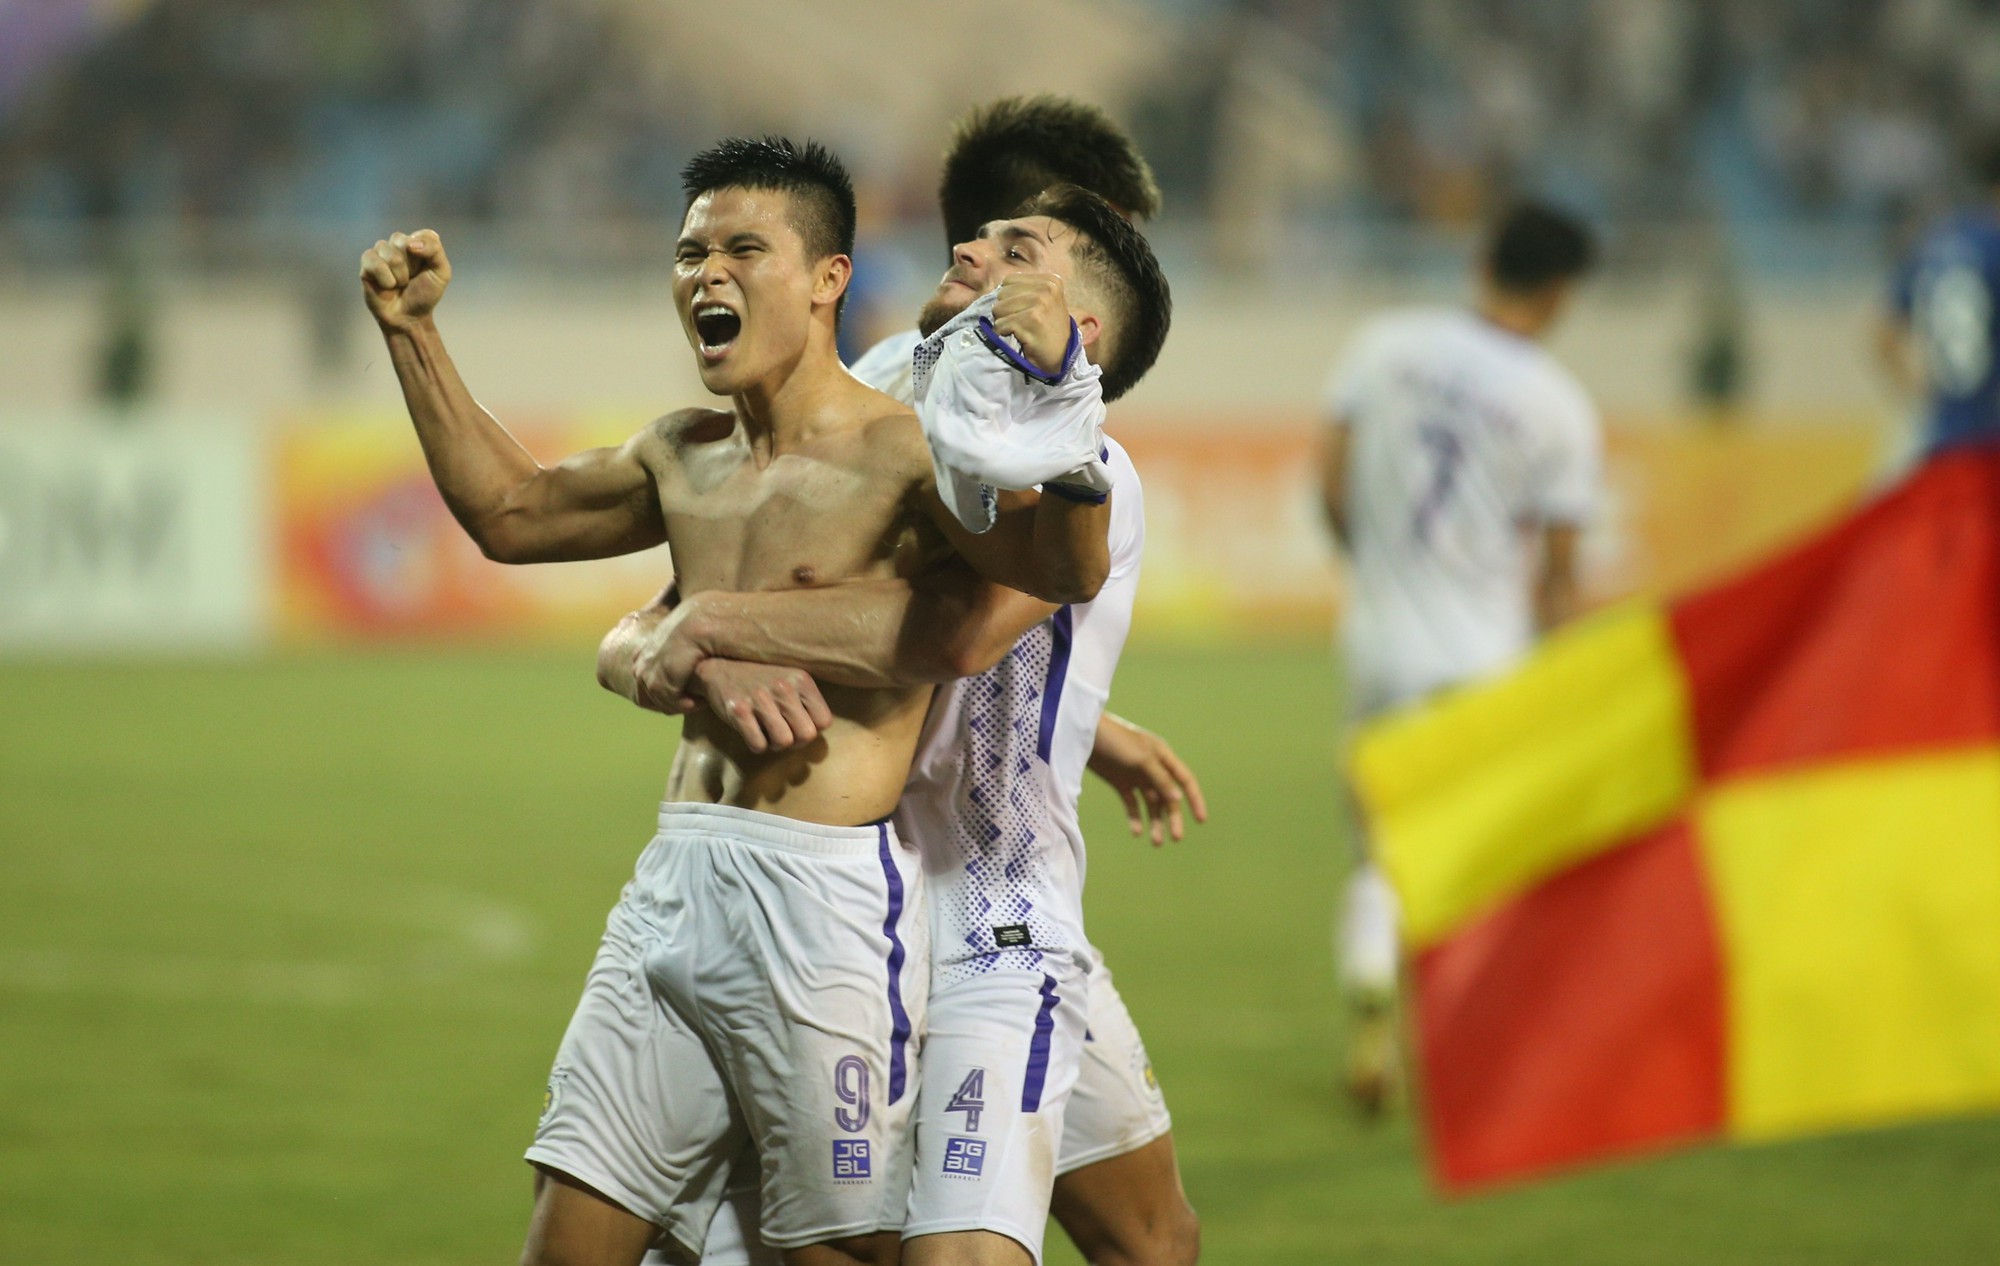 Ngôi sao đang lên của tuyển Việt Nam khiến loạt đội bóng Nhật Bản phát sốt  - Ảnh 1.